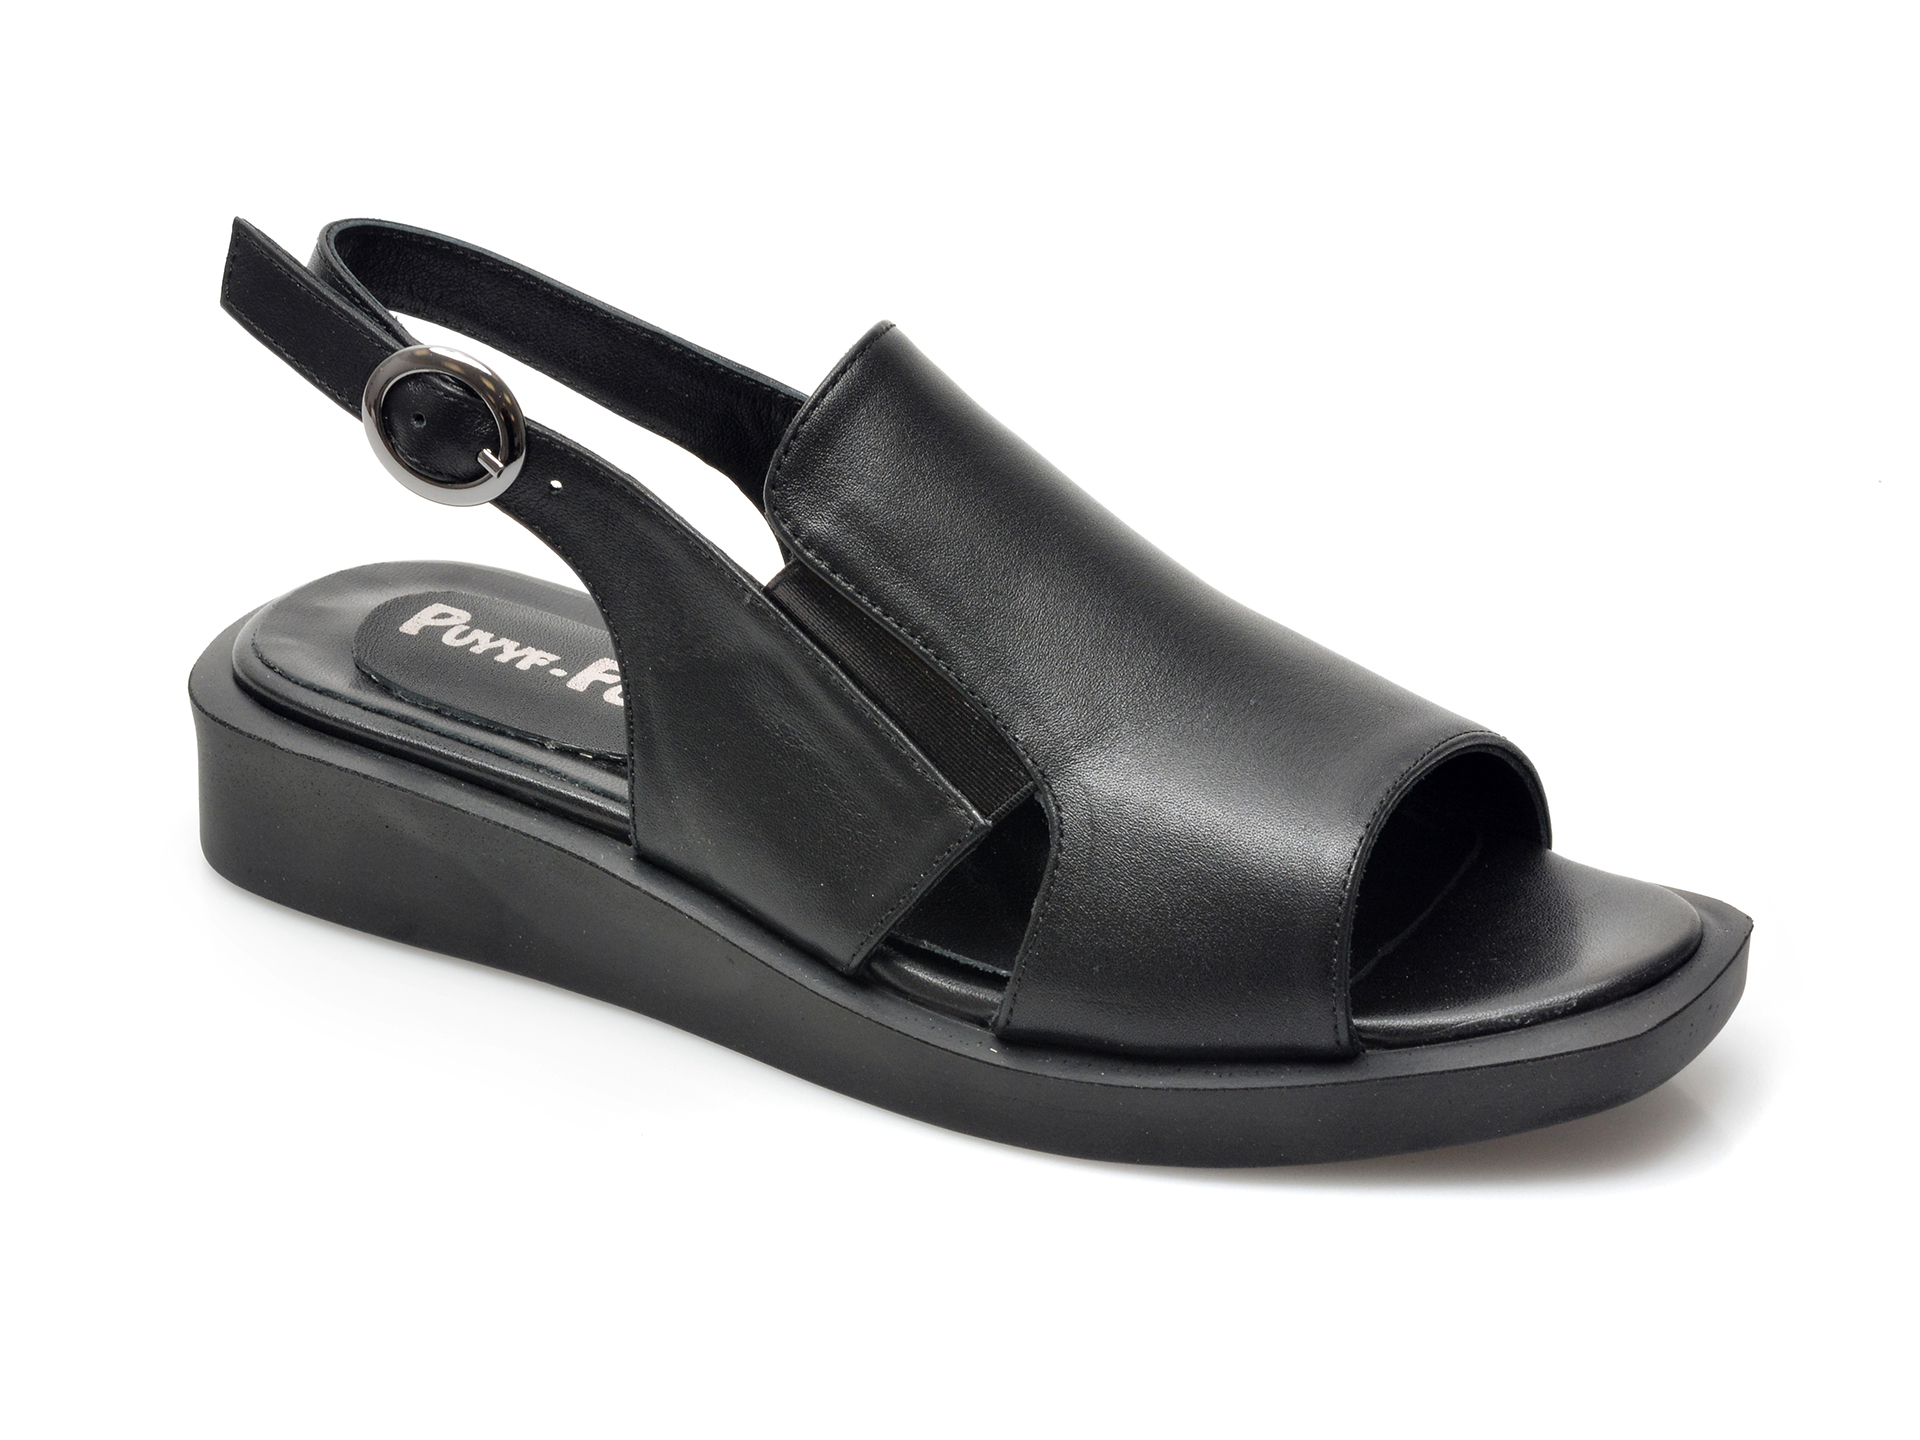 Sandale PUYYF FOOTS negre, 18900, din piele naturala 2023 ❤️ Pret Super Black Friday otter.ro imagine noua 2022